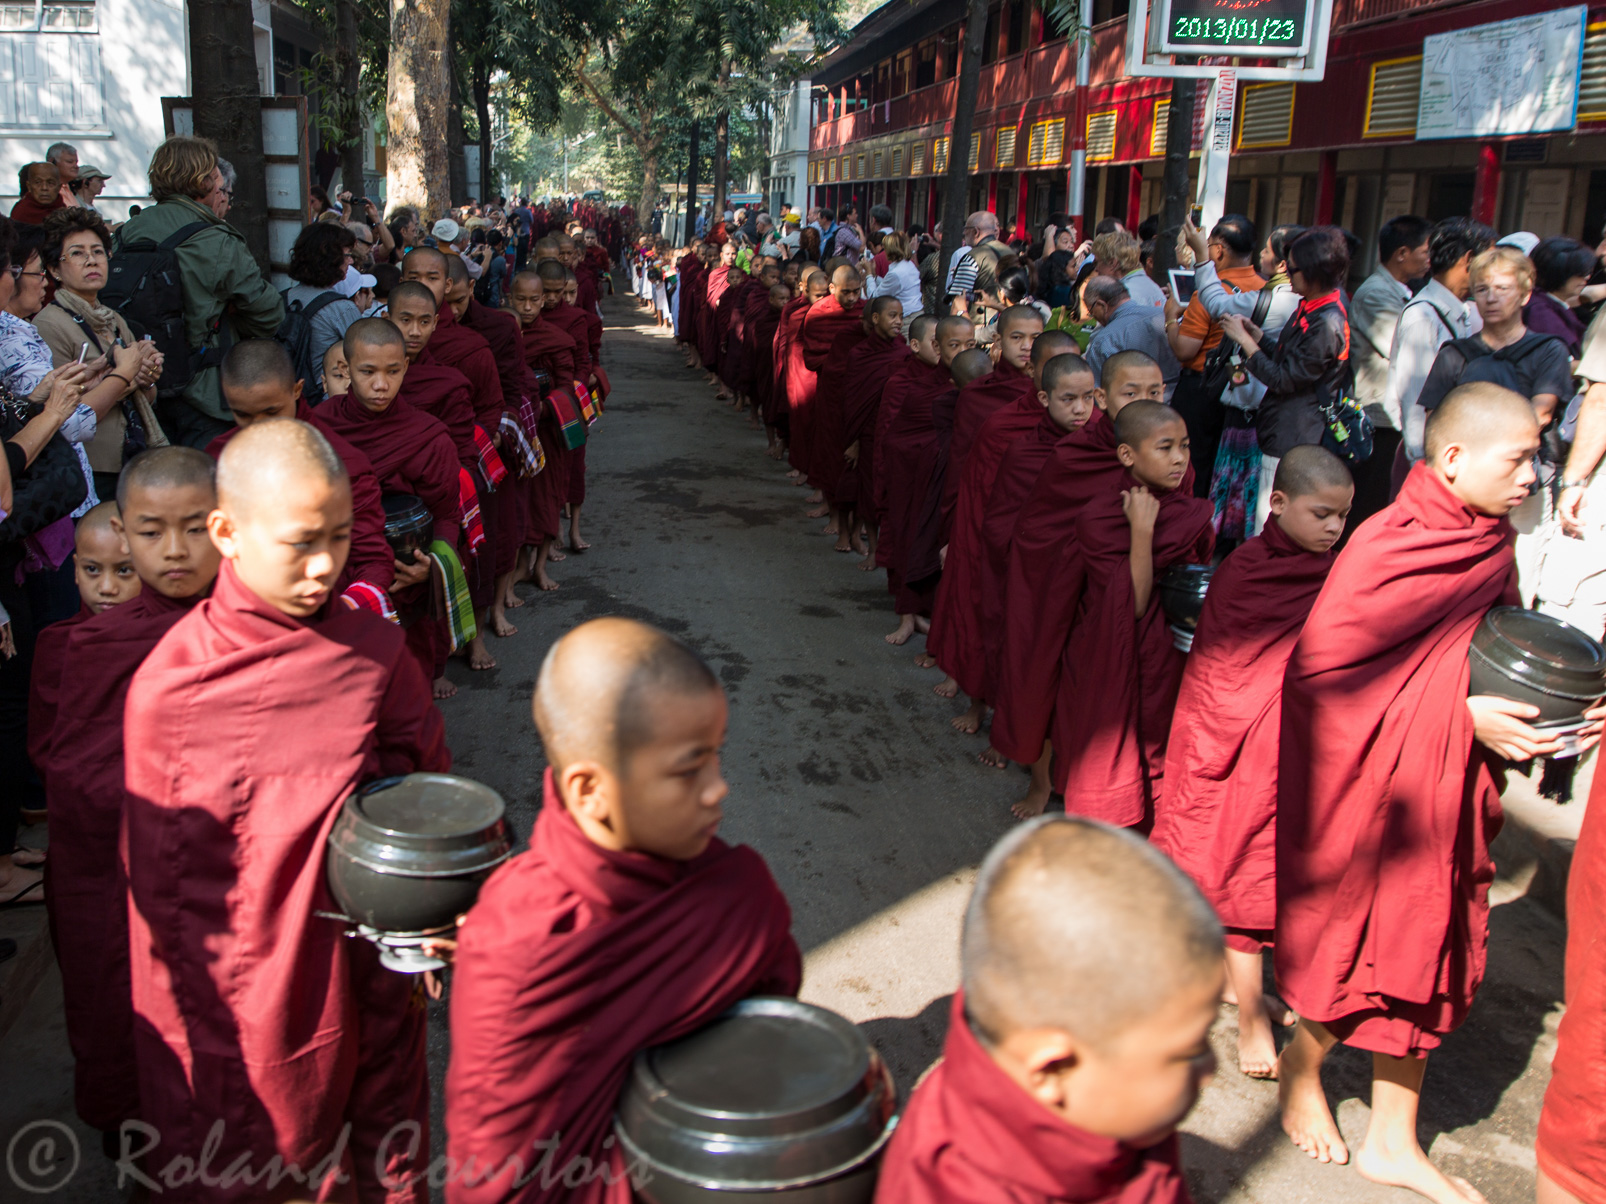 Le monastère Mahaganda-yon  date de 1950. Pendant le jeûne bouddhique environ 1000 moines se rendent en silence vers le réfectoire…. entouré de nombreux touristes.